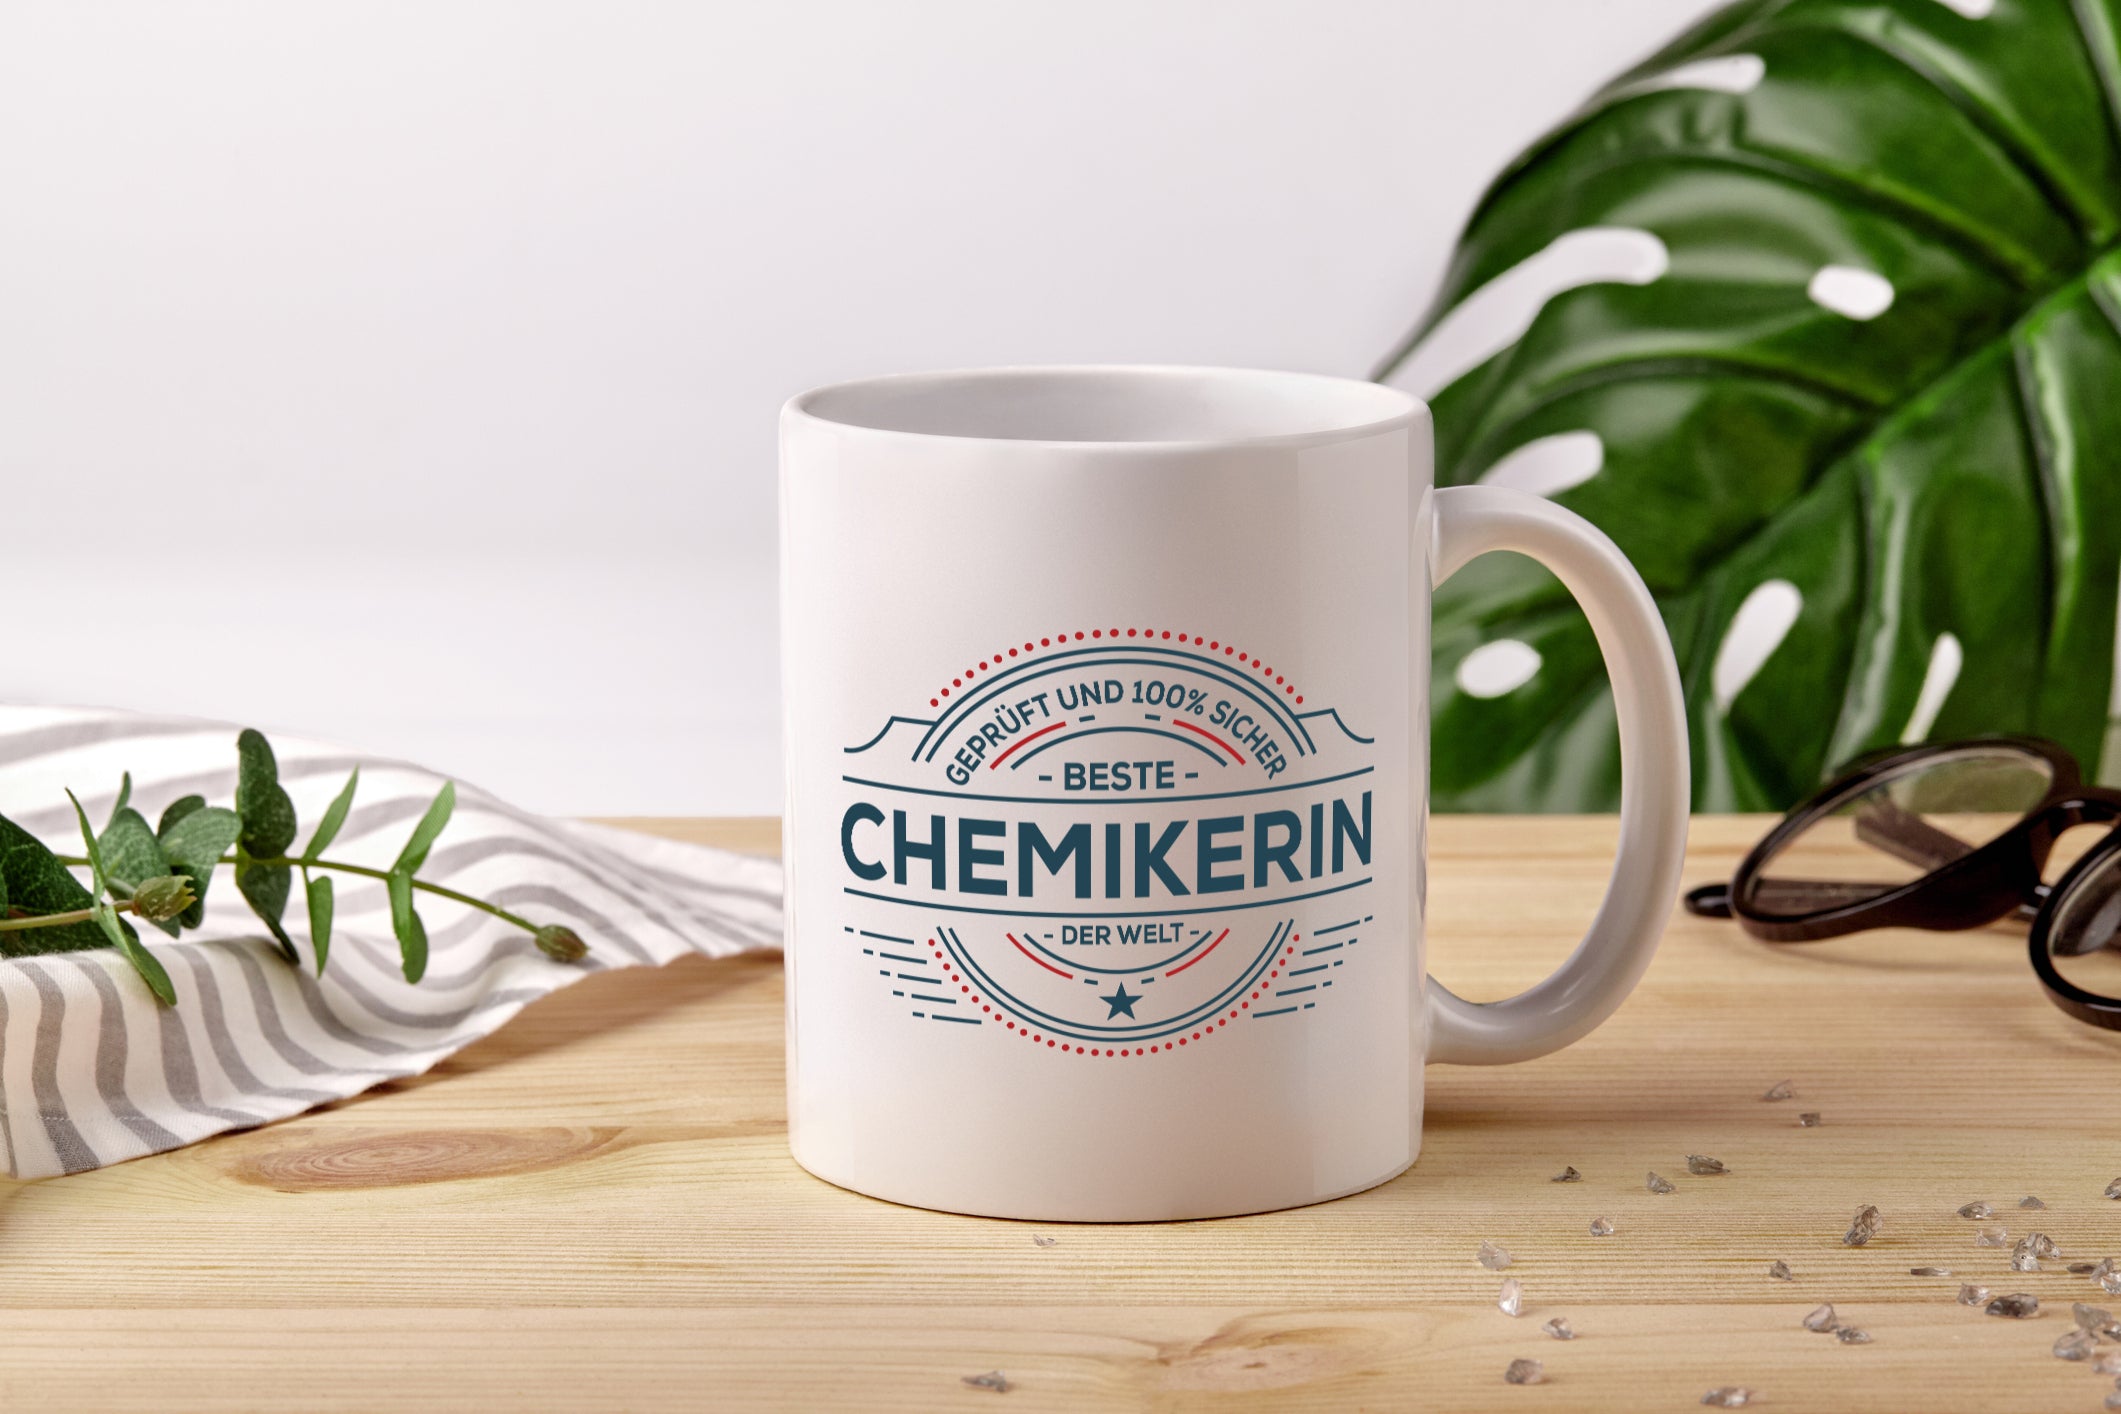 Geprüft und sicher: Chemikerin | Chemie | Labor - Tasse Weiß - Kaffeetasse / Geschenk / Familie